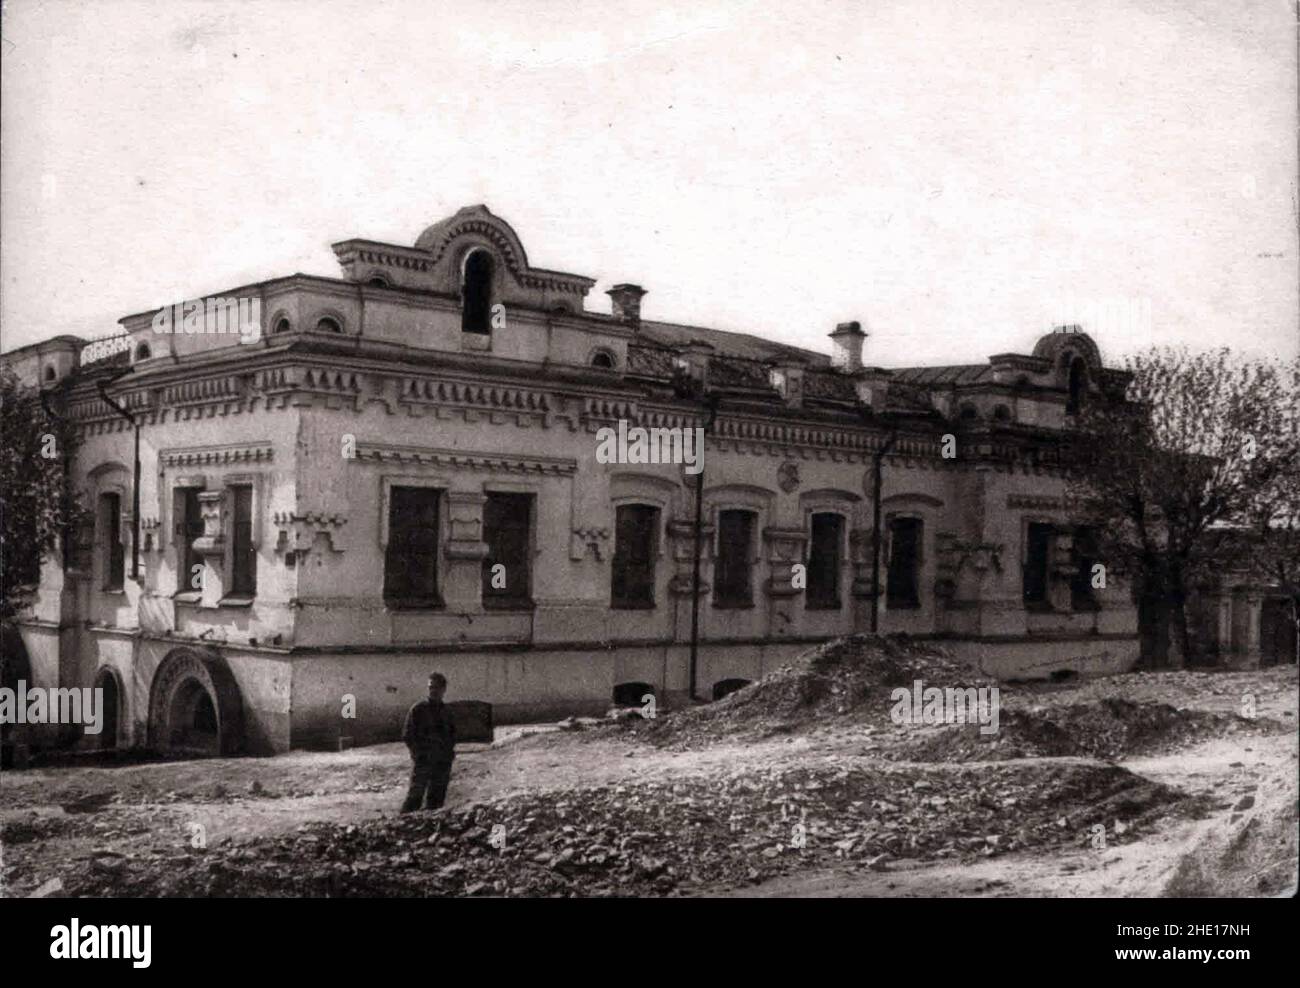 Ein Foto aus dem Jahr 1928 des Hauses Ipatiev, in dem die Familie Romanov vor ihrer Hinrichtung im Juli 1918 festgehalten wurde. Das Haus wurde leer gelassen und es wurde ein Fokus der Pro-Royalty Aufmerksamkeit. Es wurde 1977 abgerissen. Stockfoto